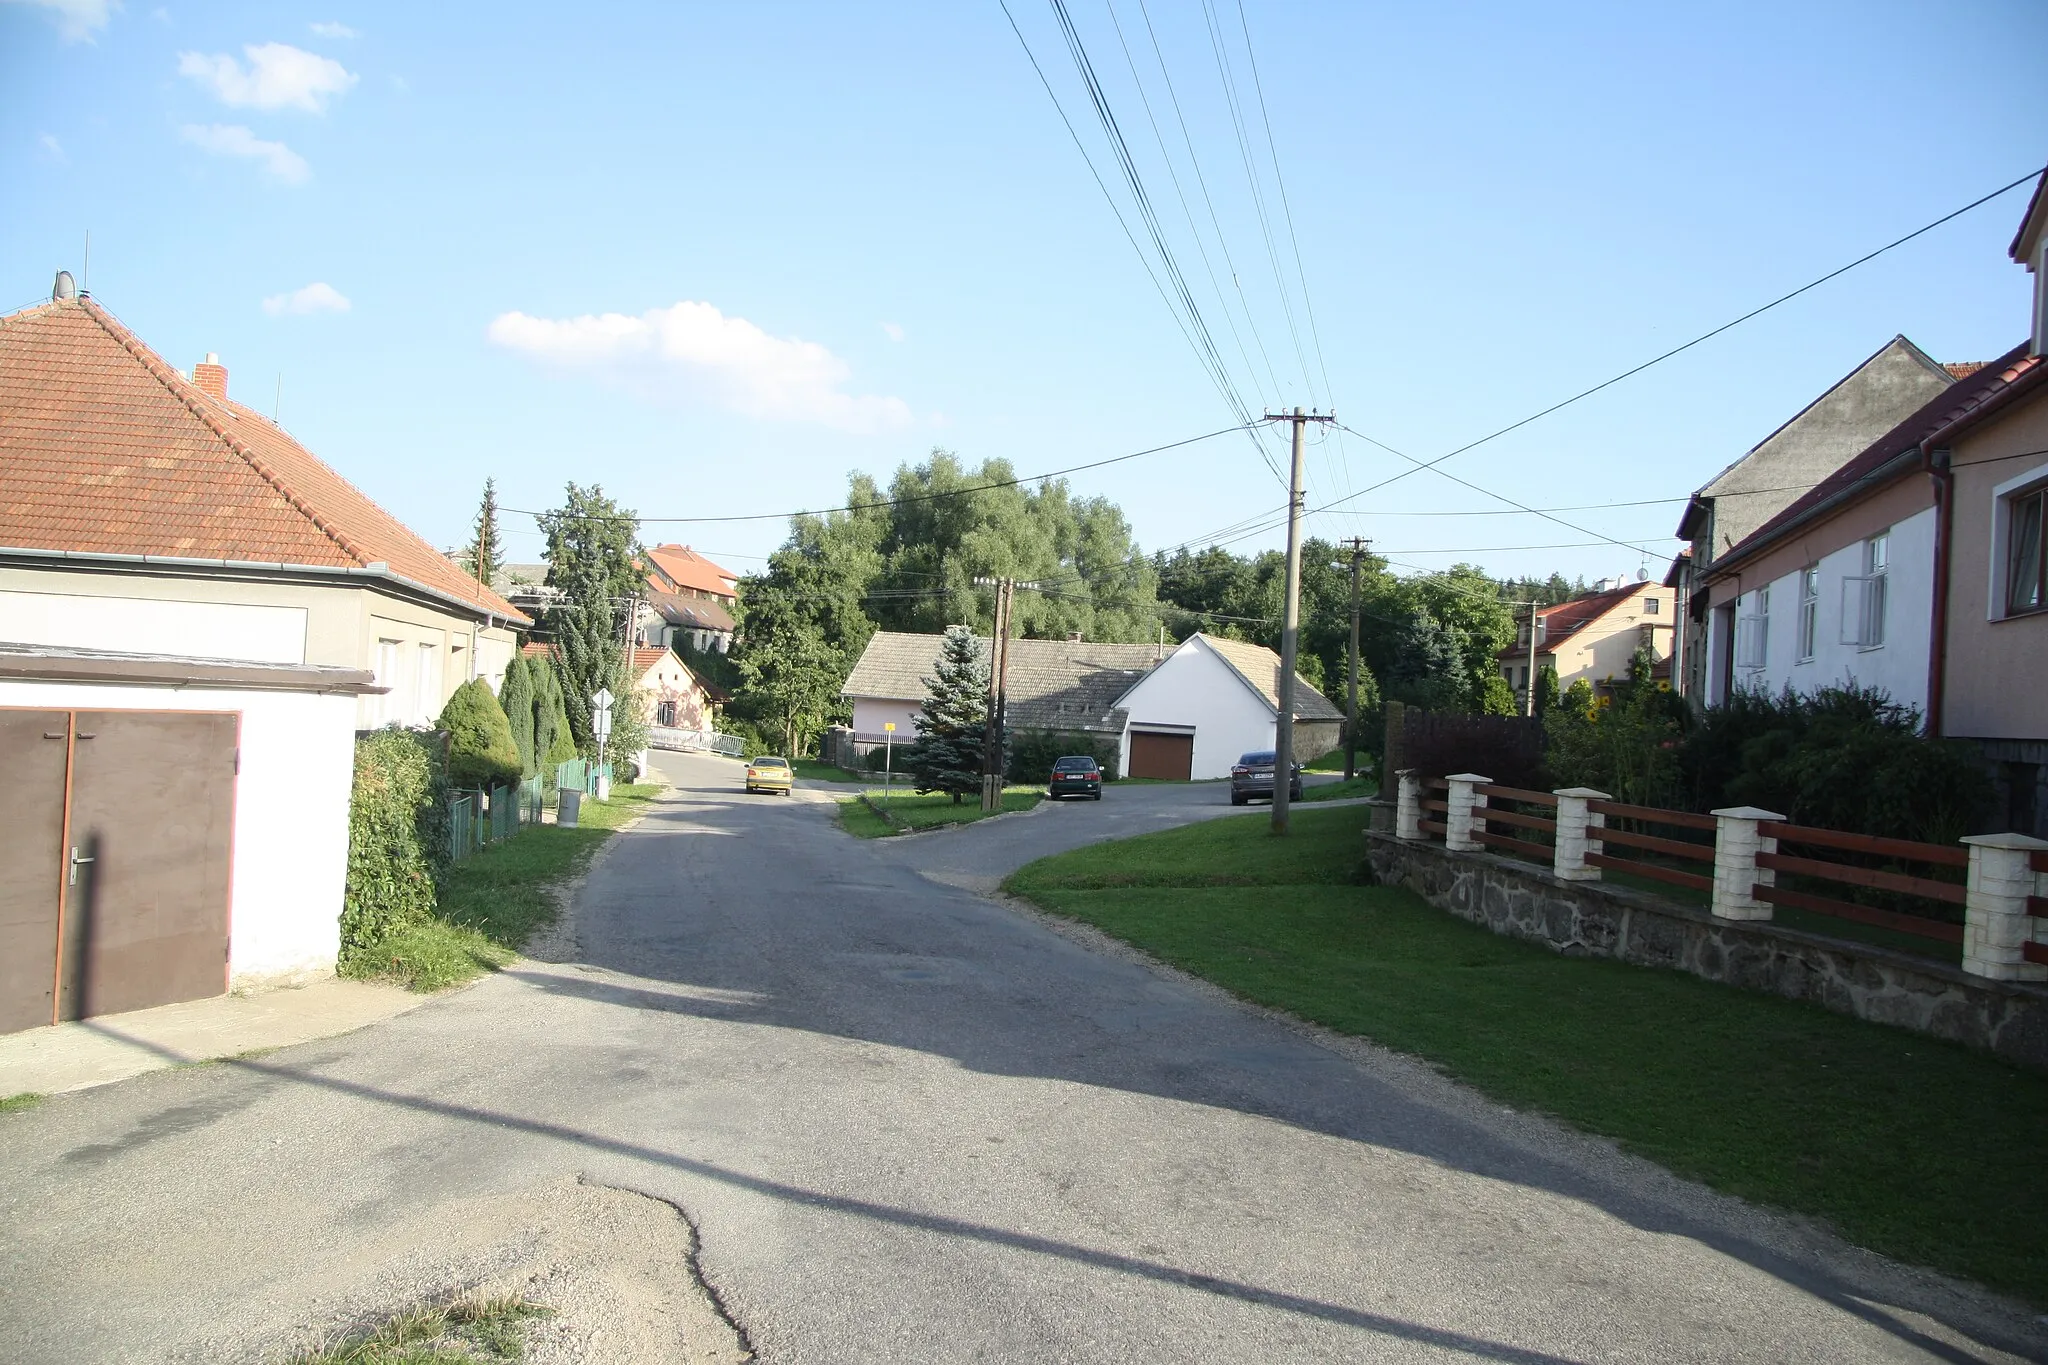 Photo showing: Center of Holubí Zhoř, Velká Bíteš, Žďár nad Sázavou District.